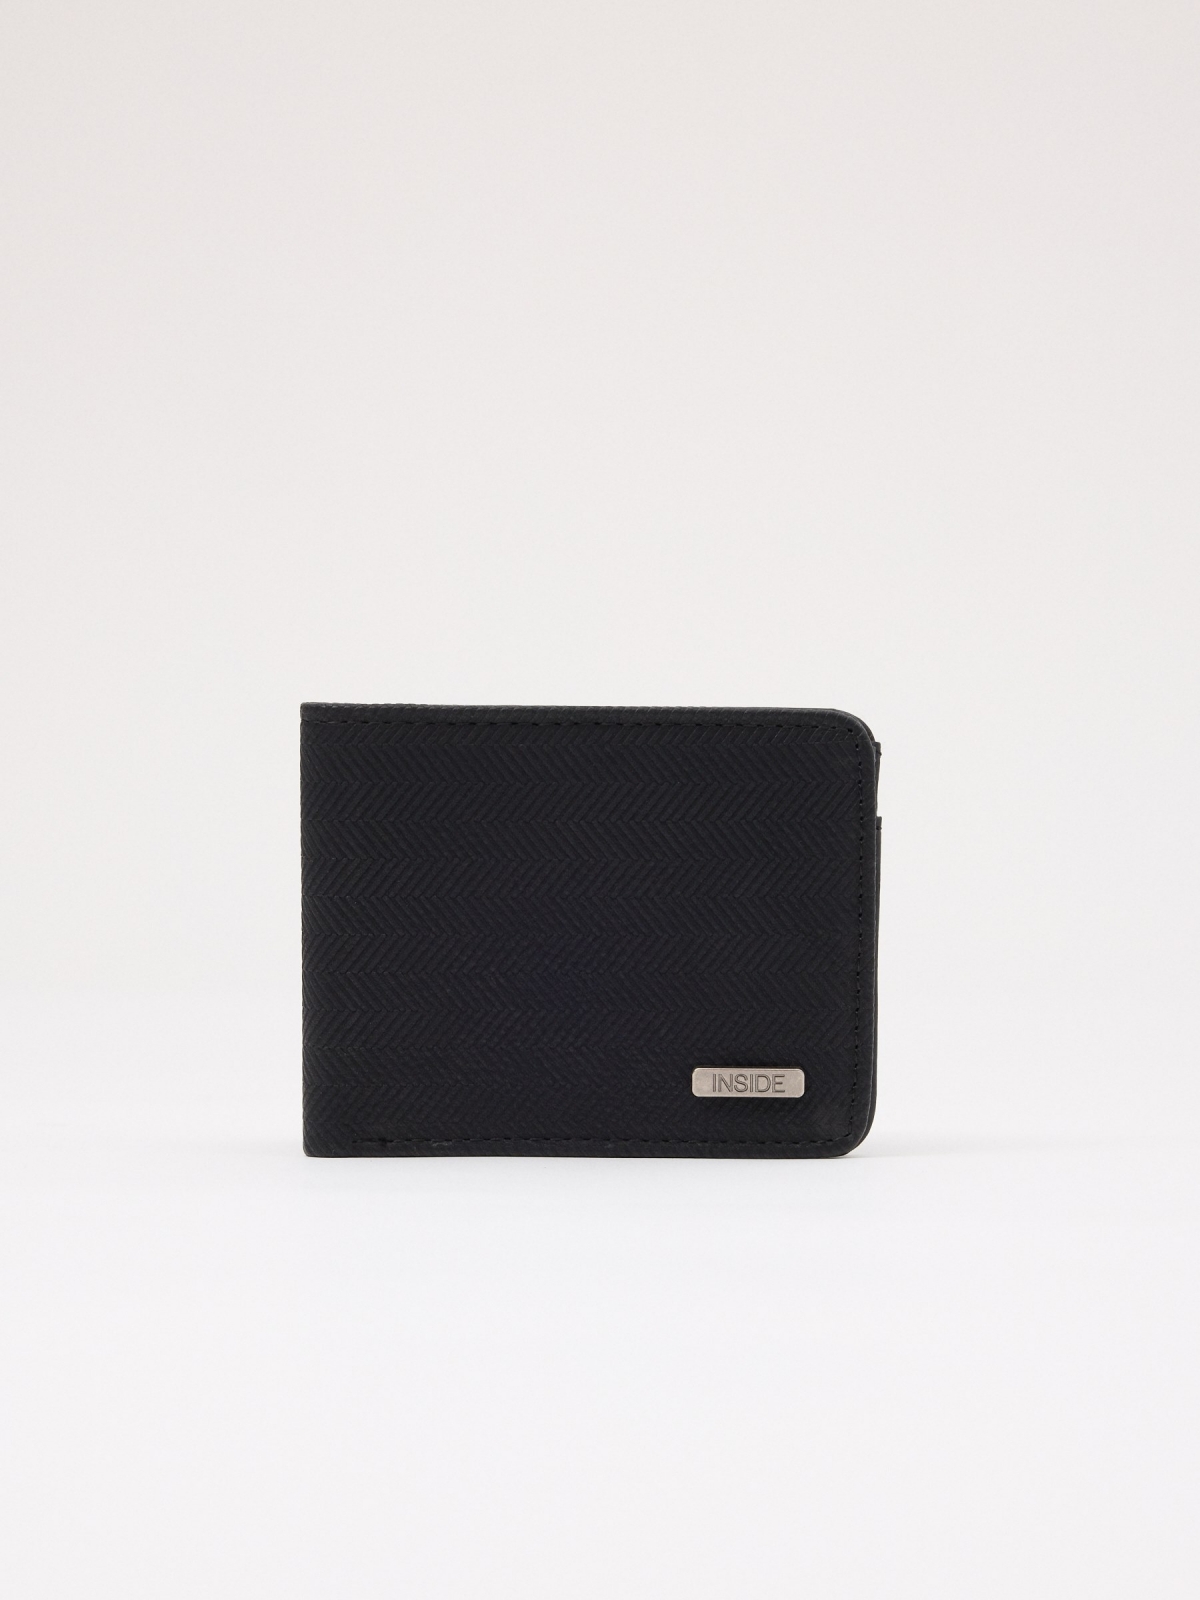 Ethnic design leatherette wallet black